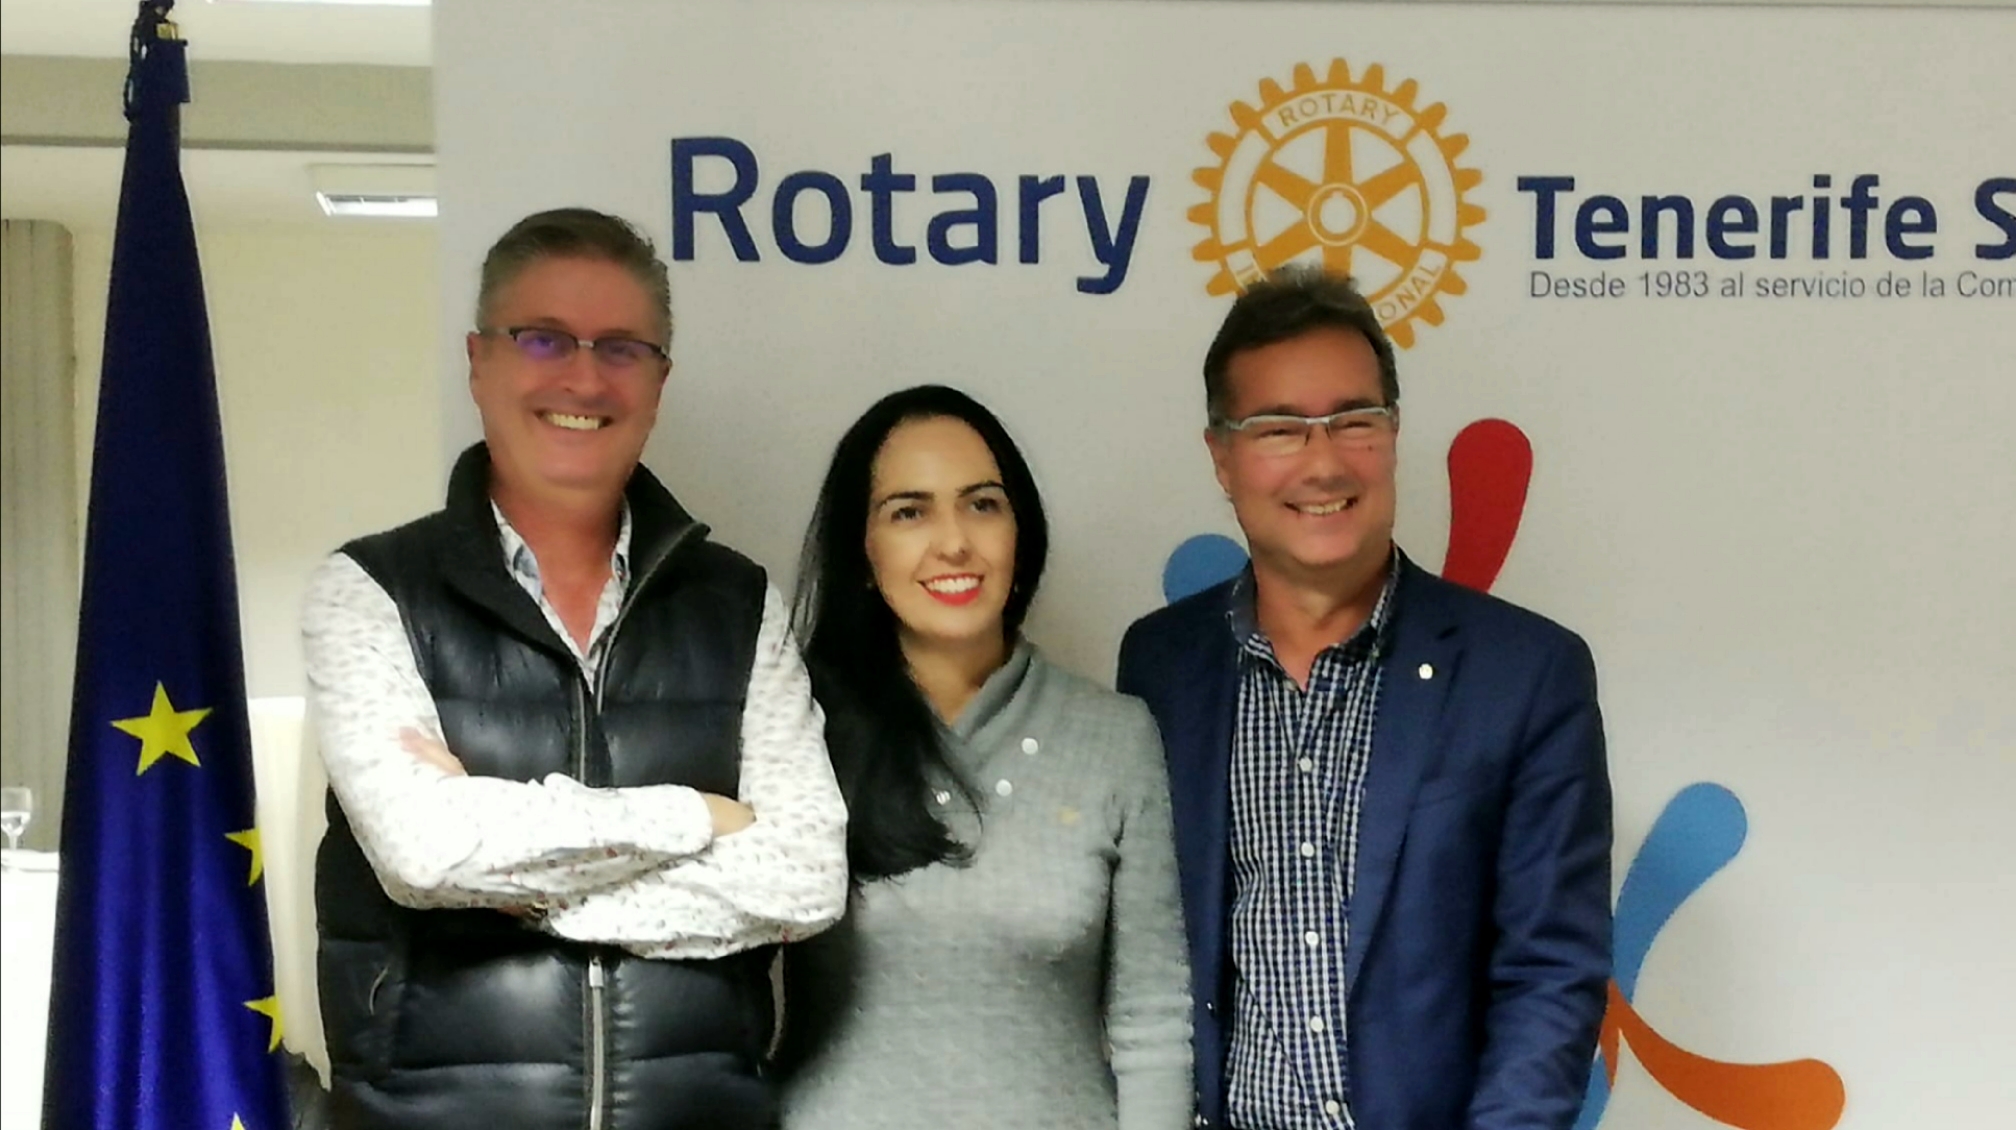 Raquel Arroyo elegida presidenta del Rotary Club Tenerife Sur para el año rotario 2021/2022